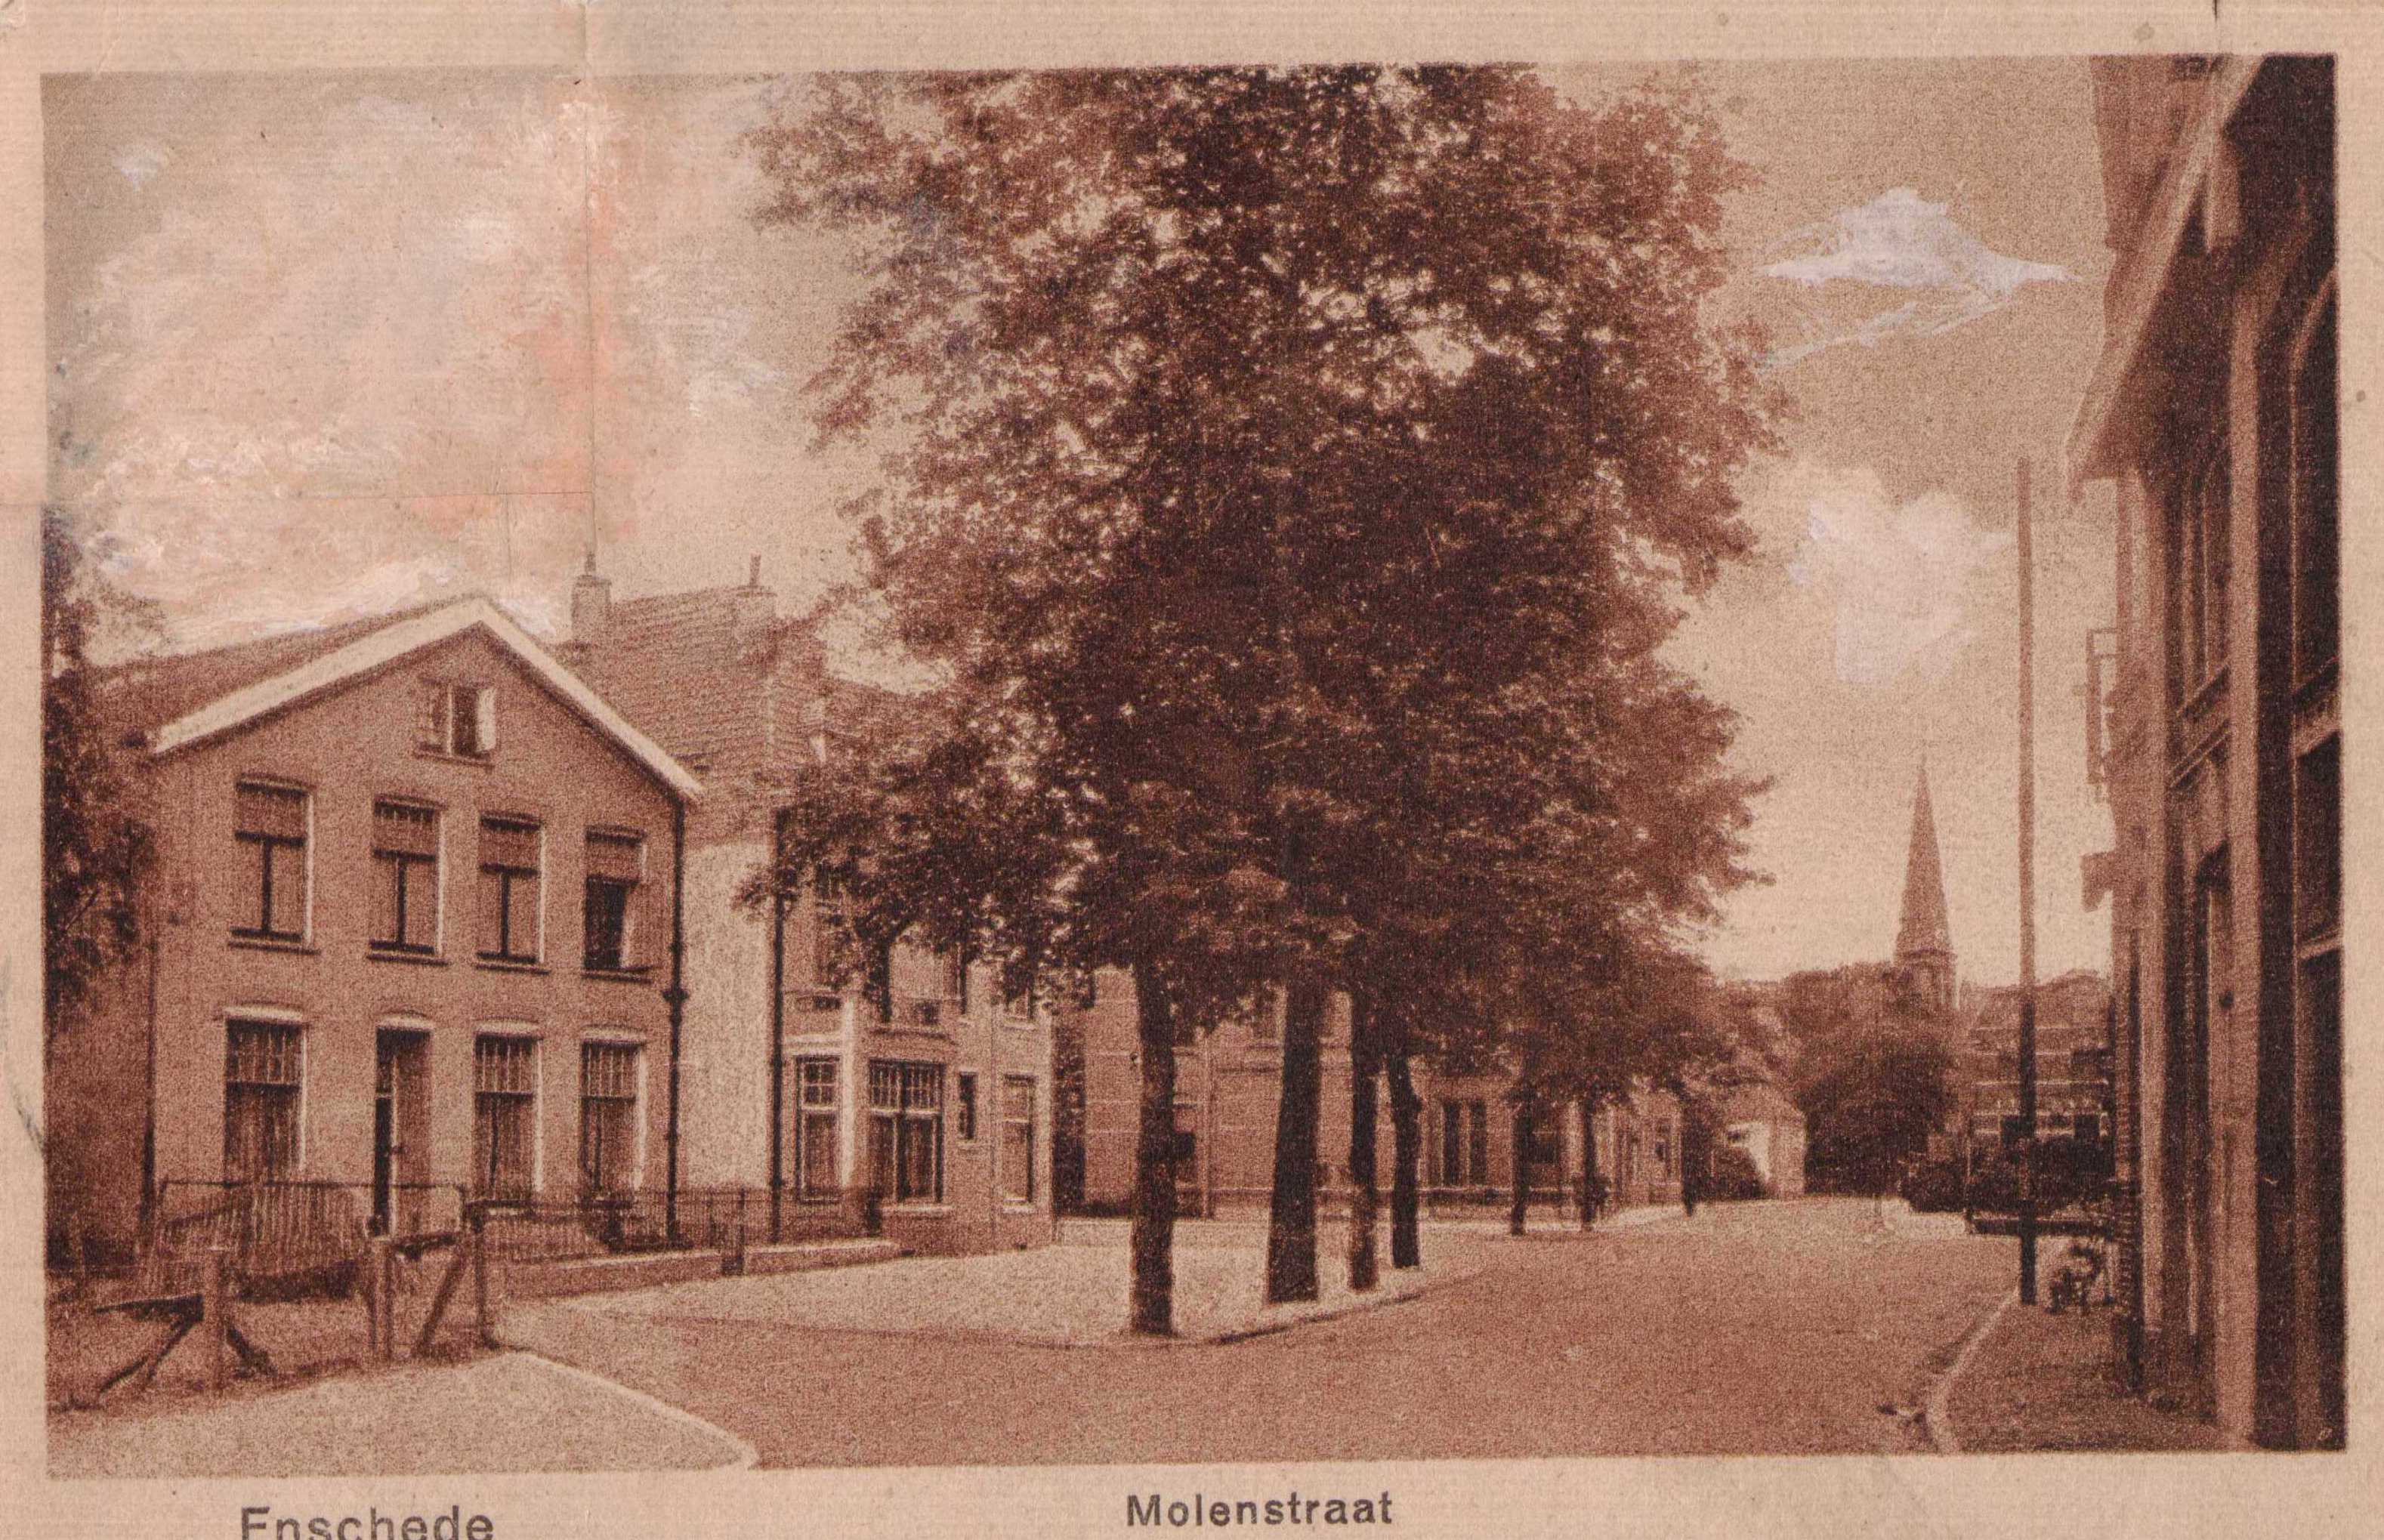 Molenstraat-1919-f51b8b45.jpg